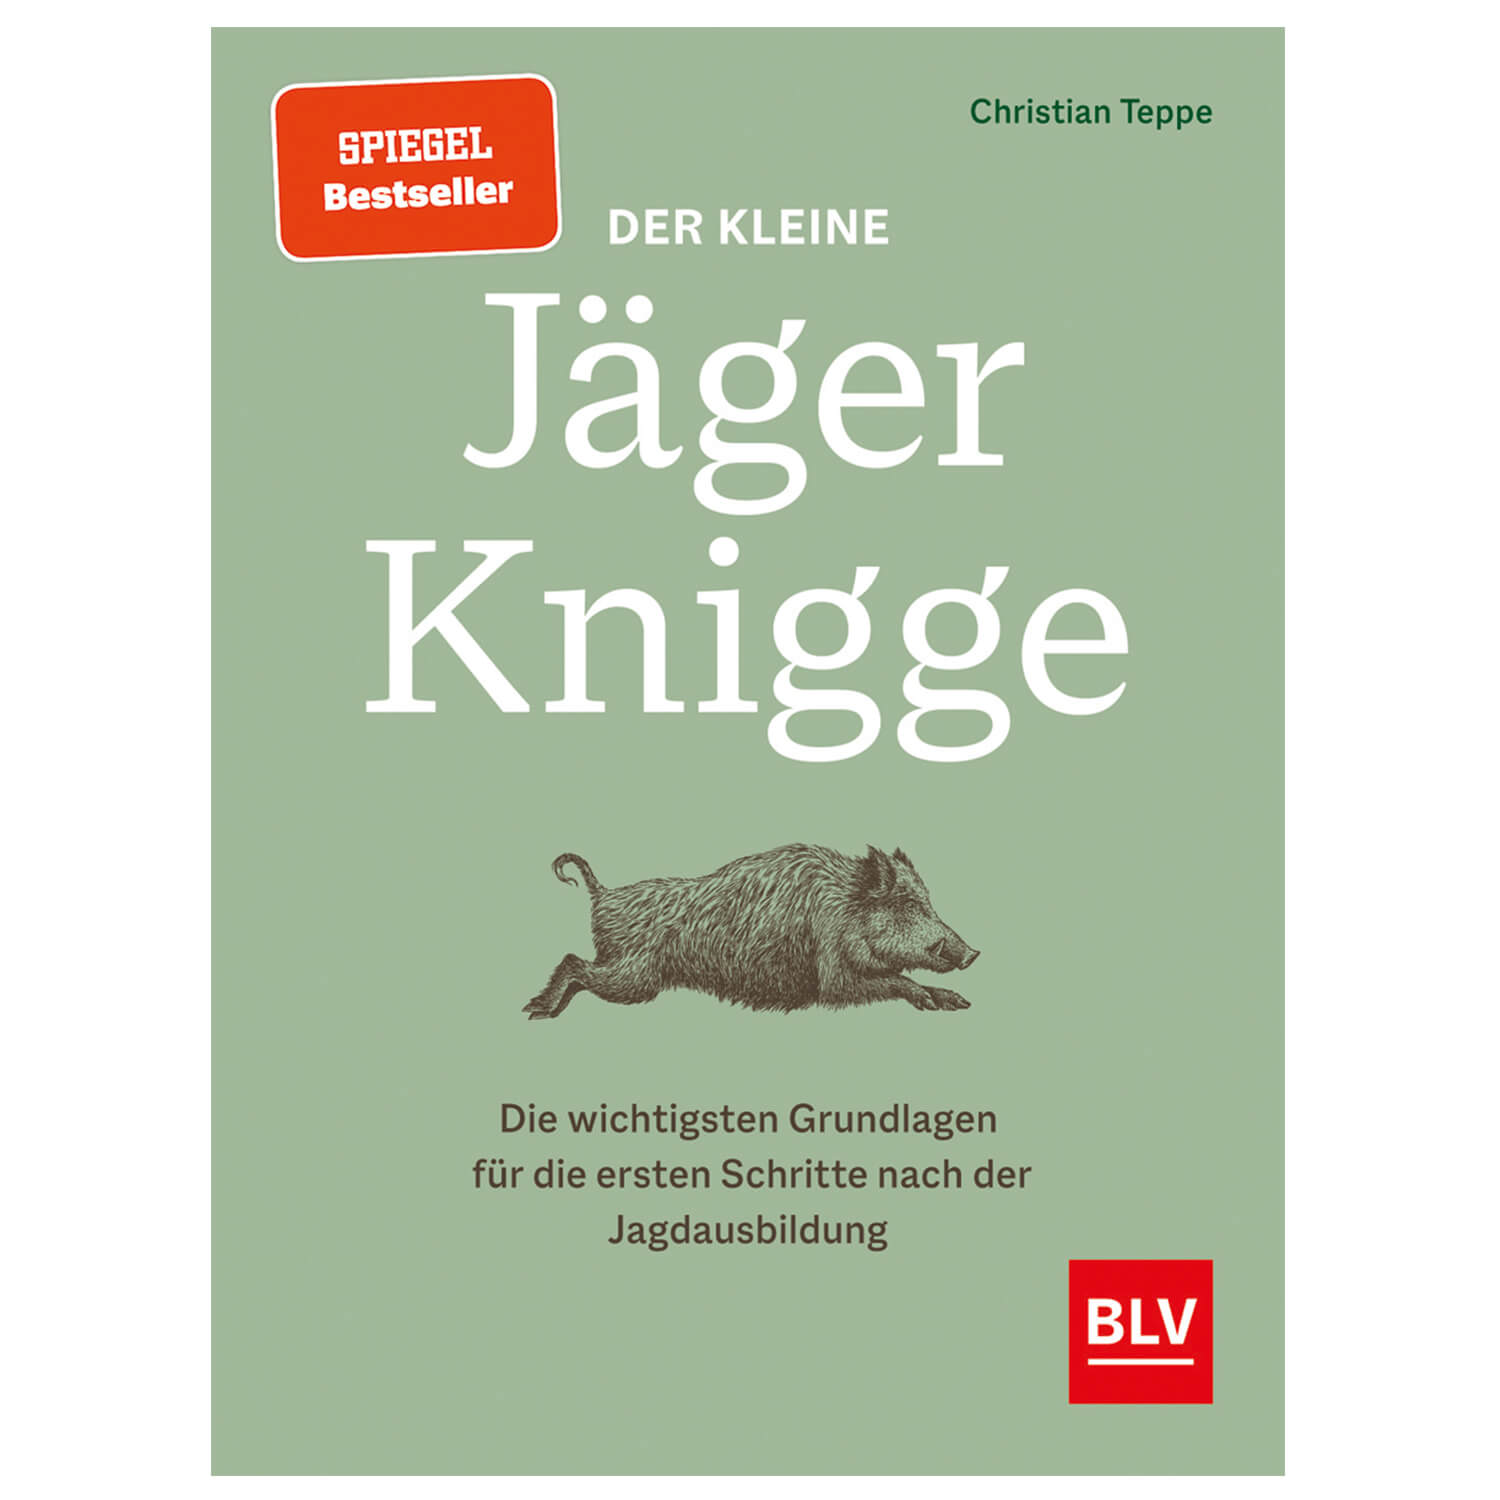 BLV Buch Der kleine Jägerknigge - Jagdbücher